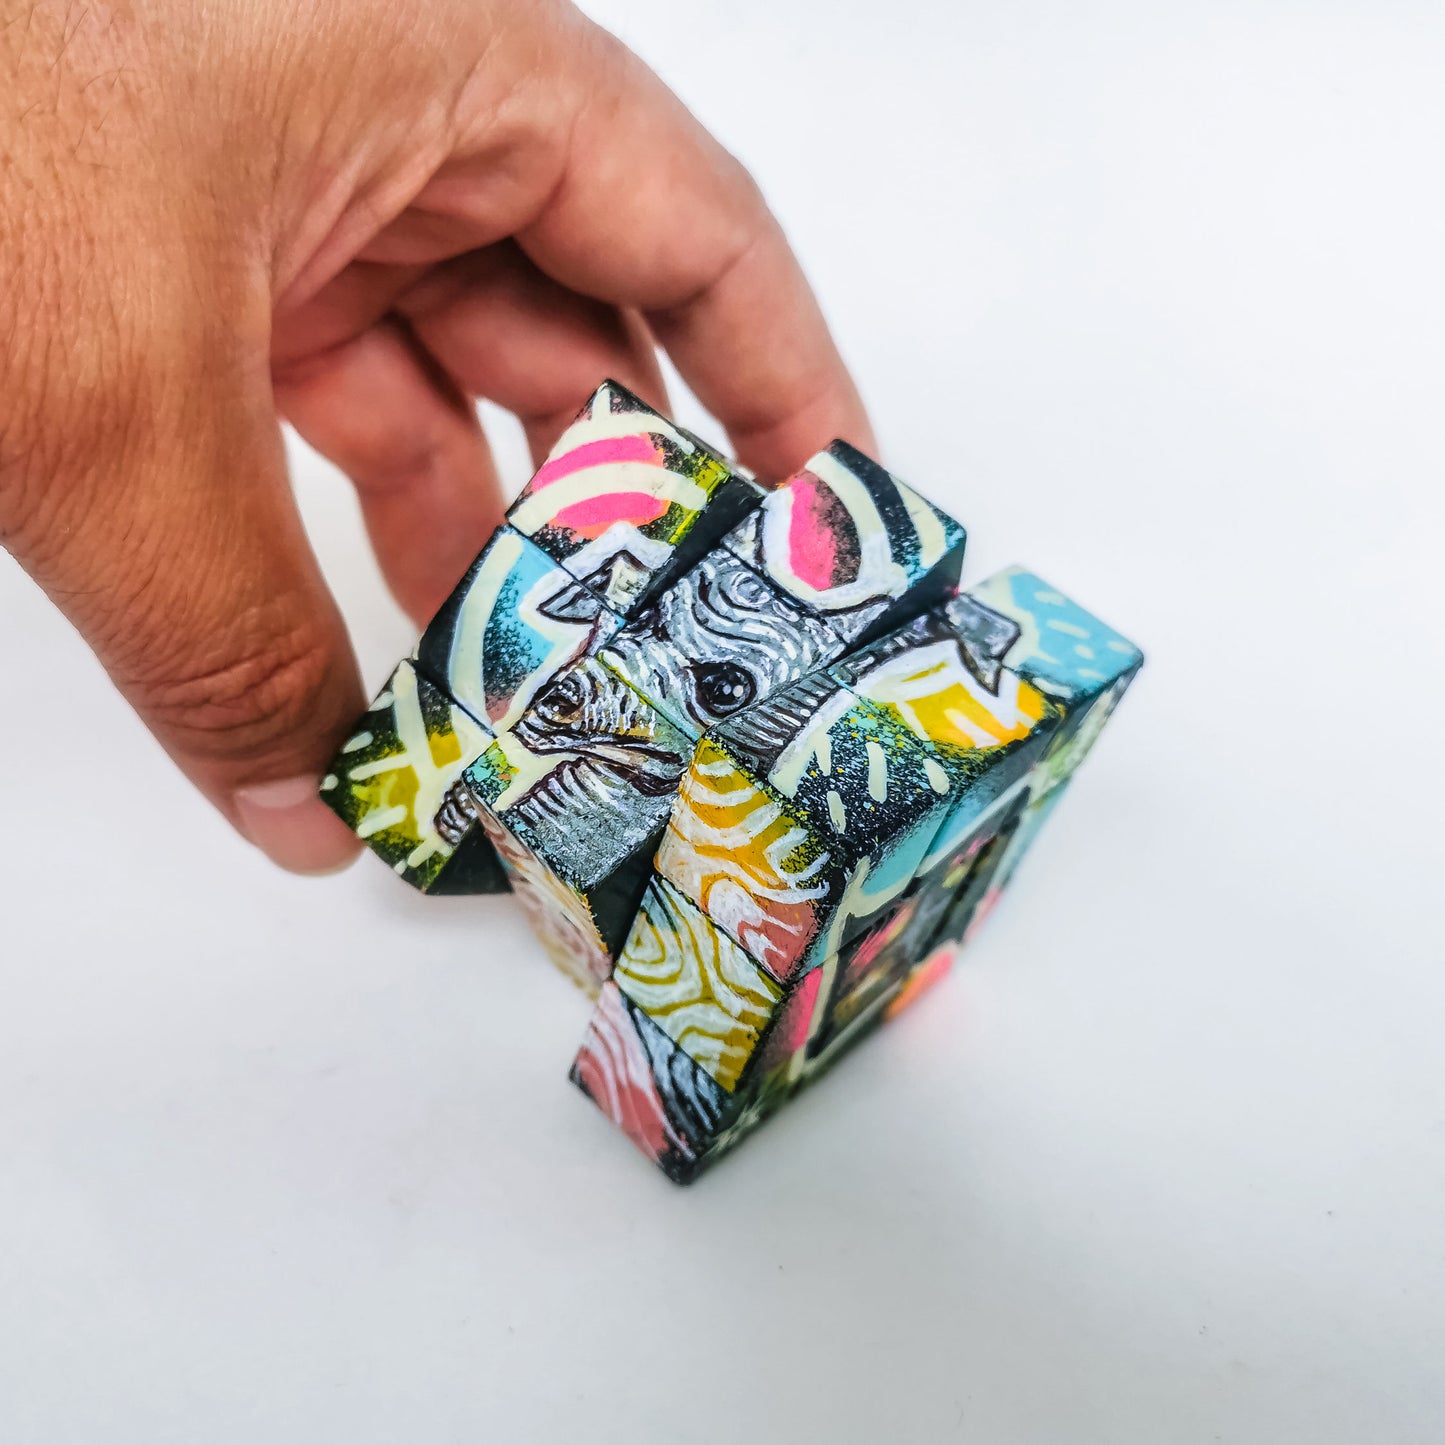 Art Object Rubik-Cube - "RubickOne"